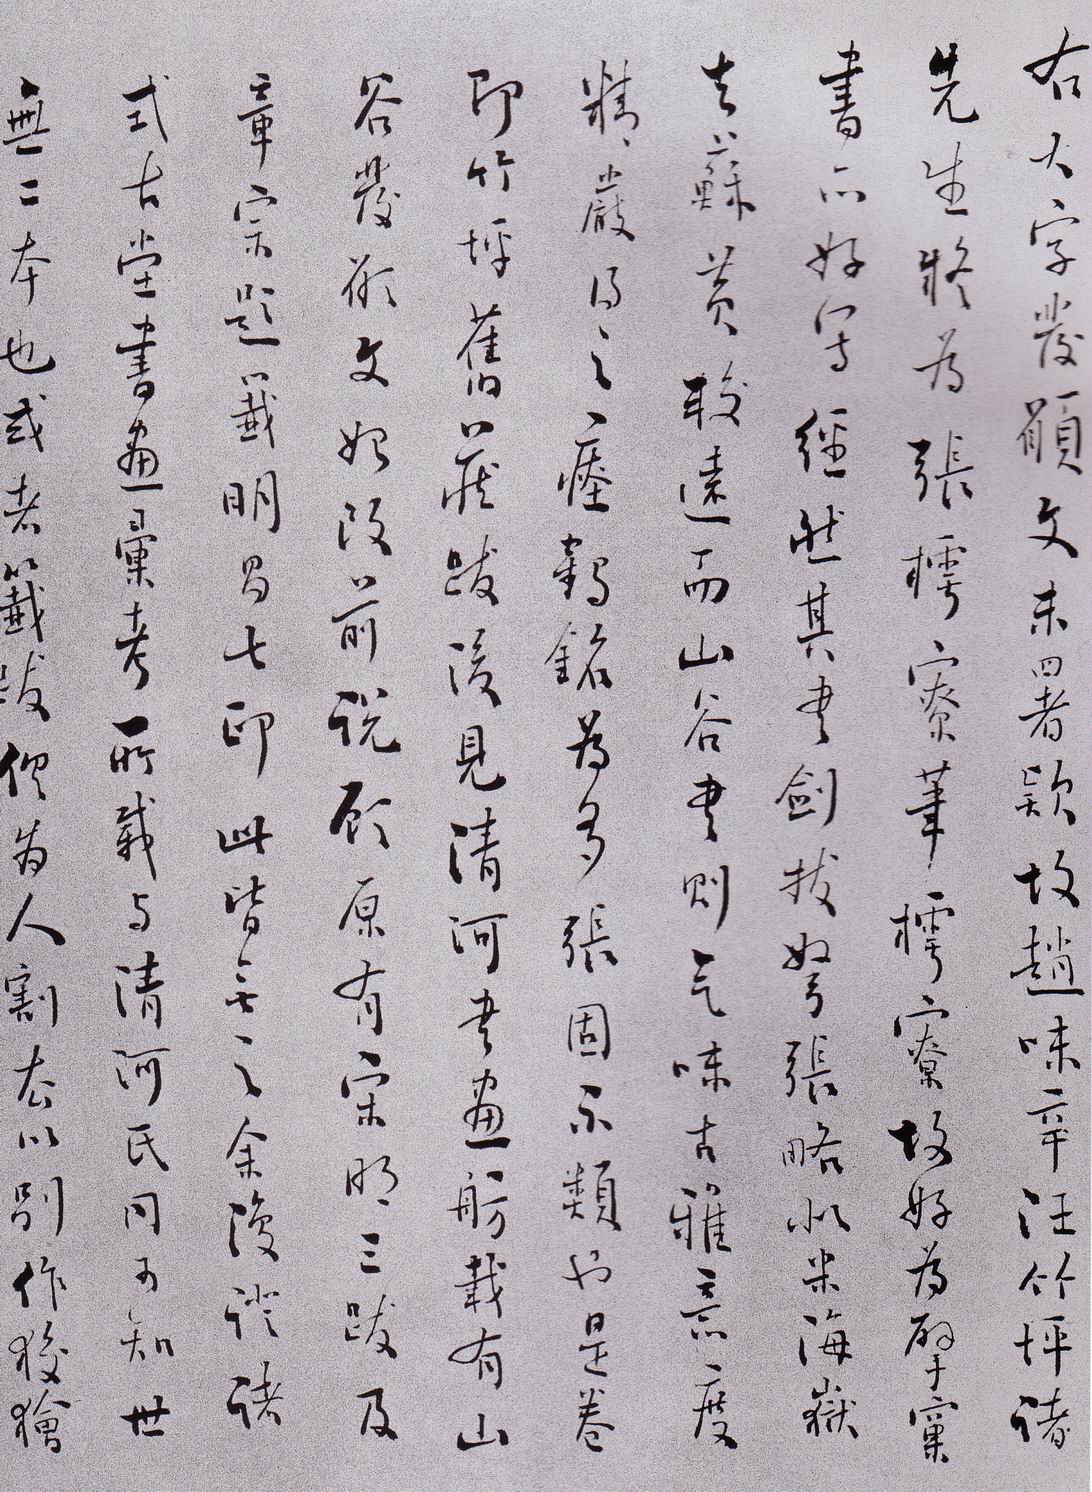 黄庭坚《发愿文卷》-台北故宫博物院藏(图35)